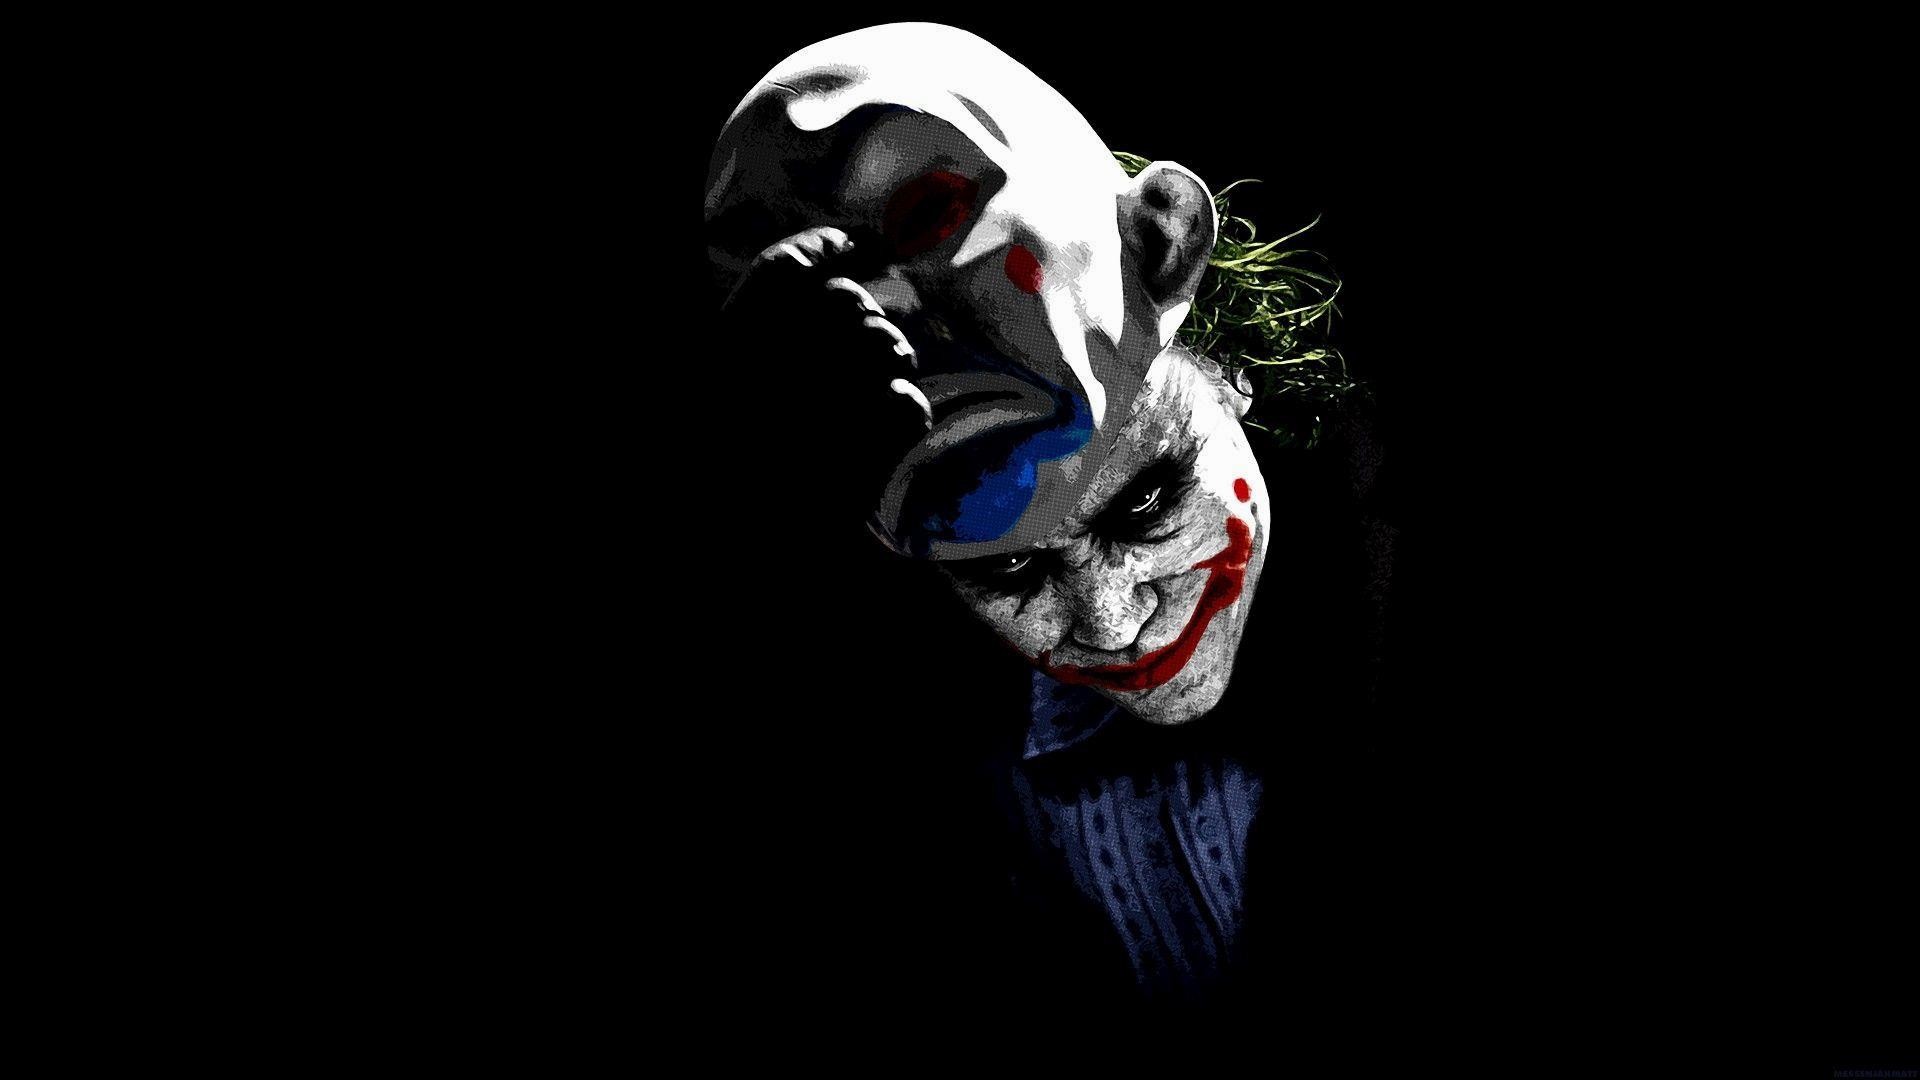 1920x1080 ... Images For > Killer Clown Wallpaper | Killer Clowns | Pinterest .